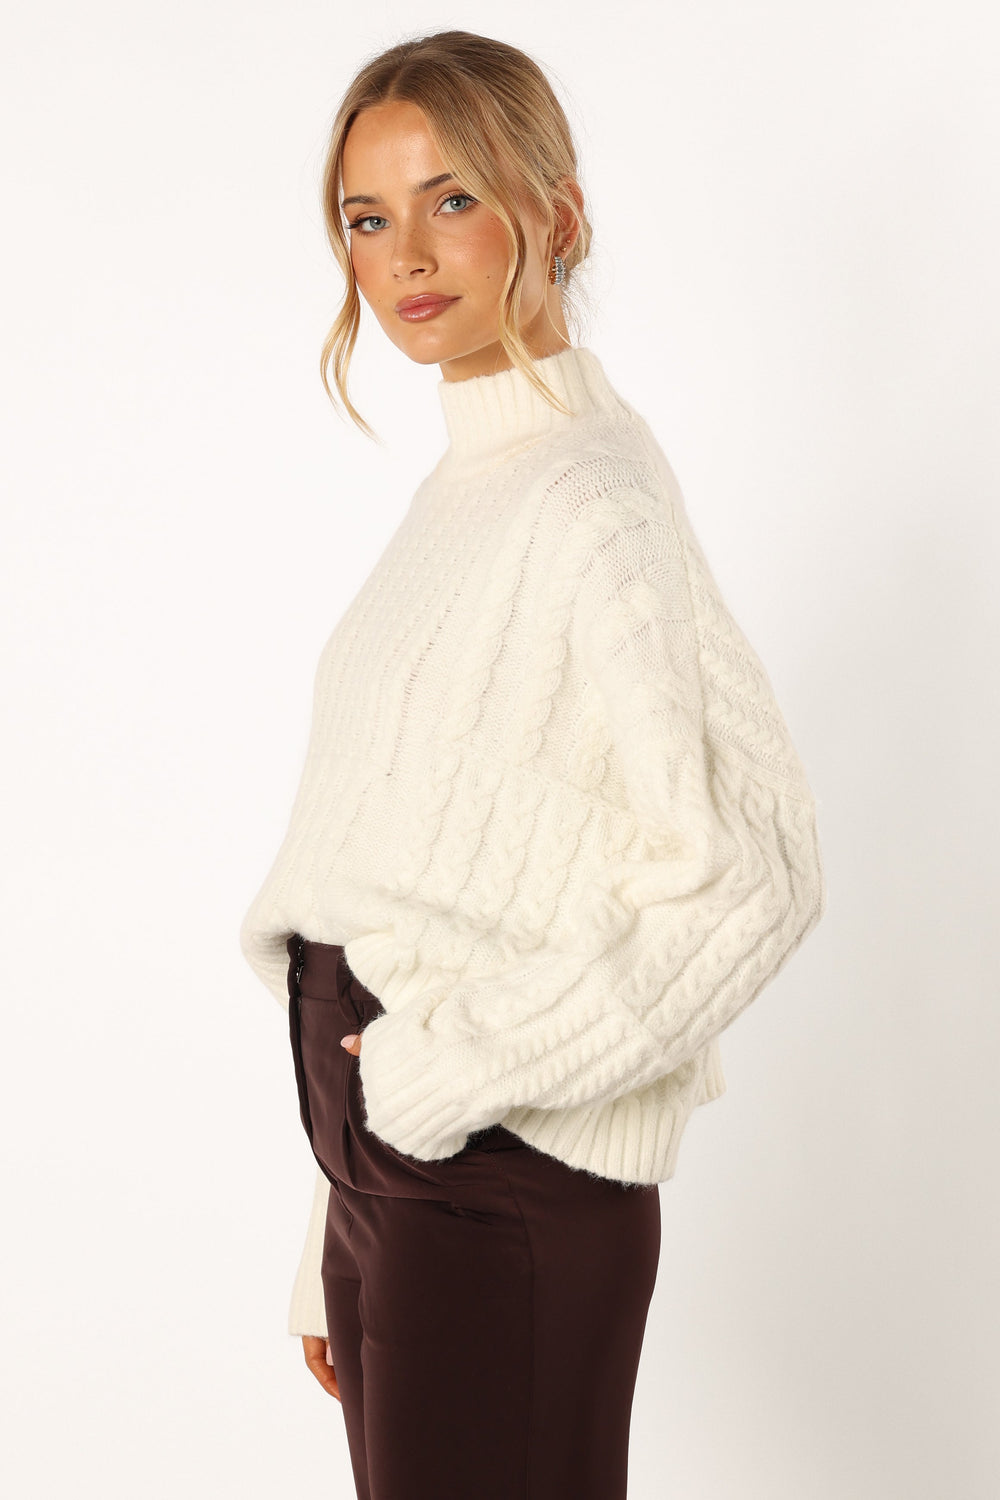 KNITWEAR @Skye Knit Sweater - White